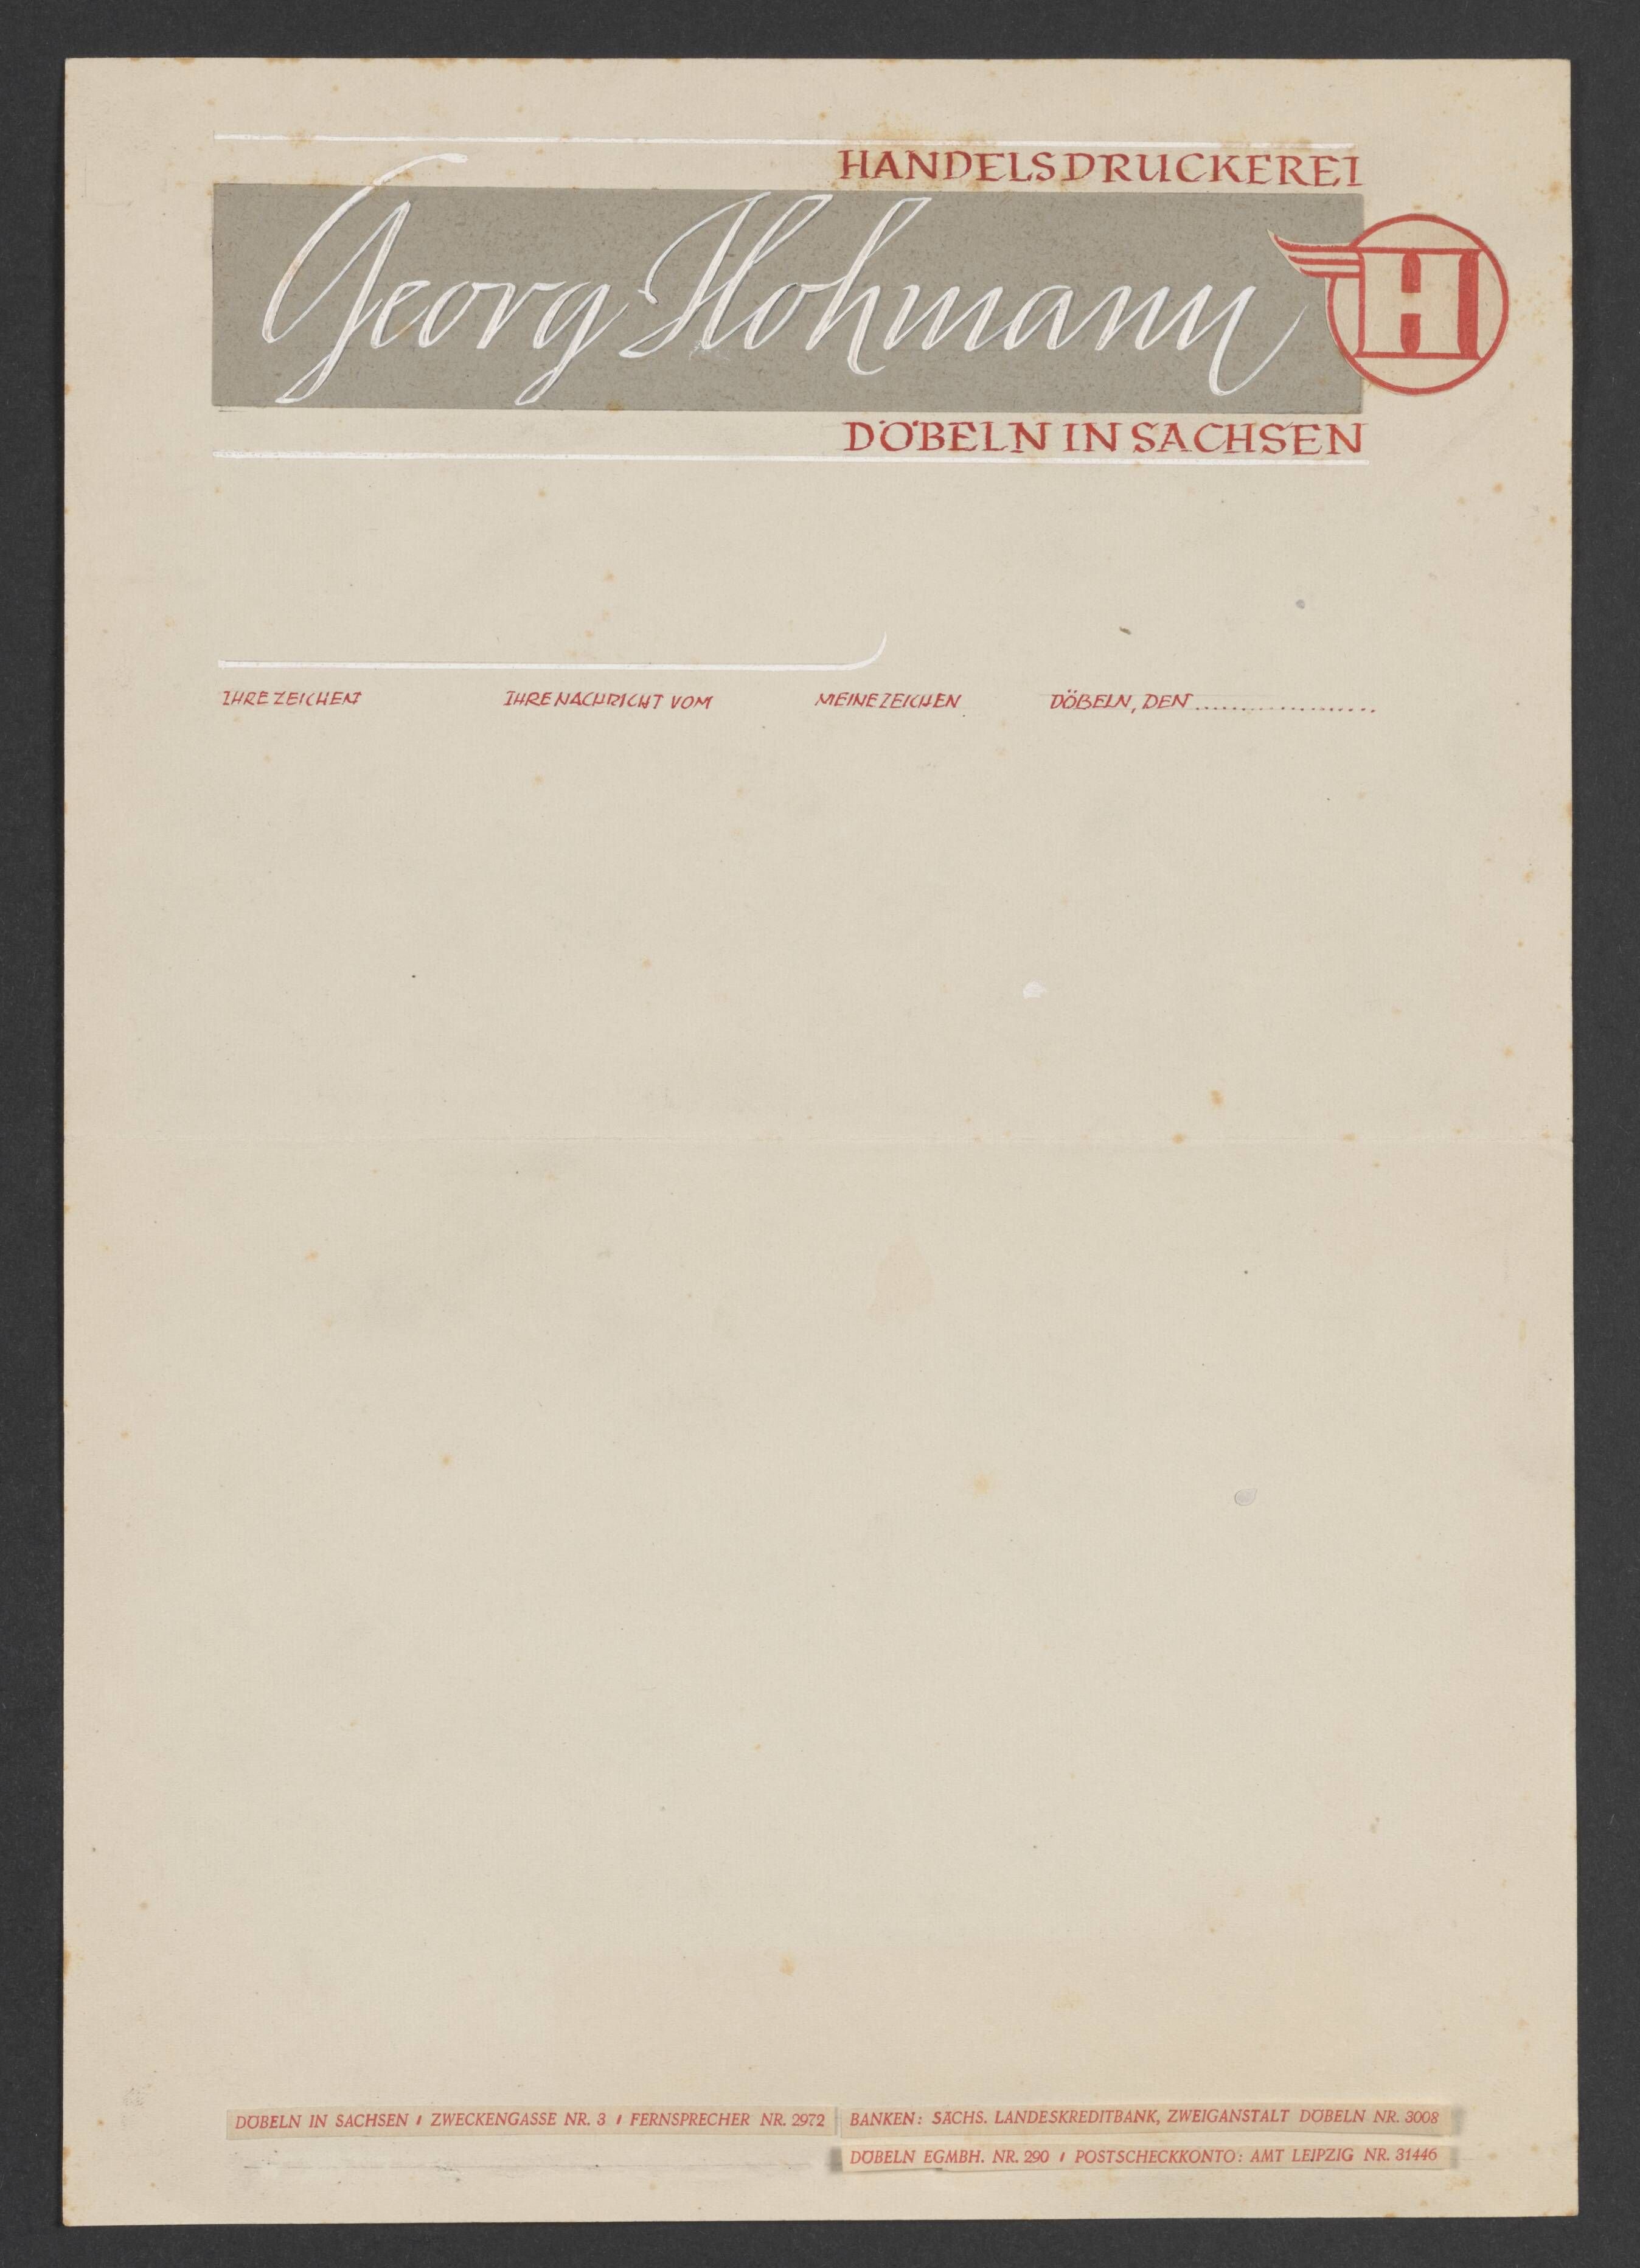 Briefbogenentwurf der Handelsdruckerei Hohmann (Stadtmuseum / Kleine Galerie Döbeln CC BY-NC-SA)